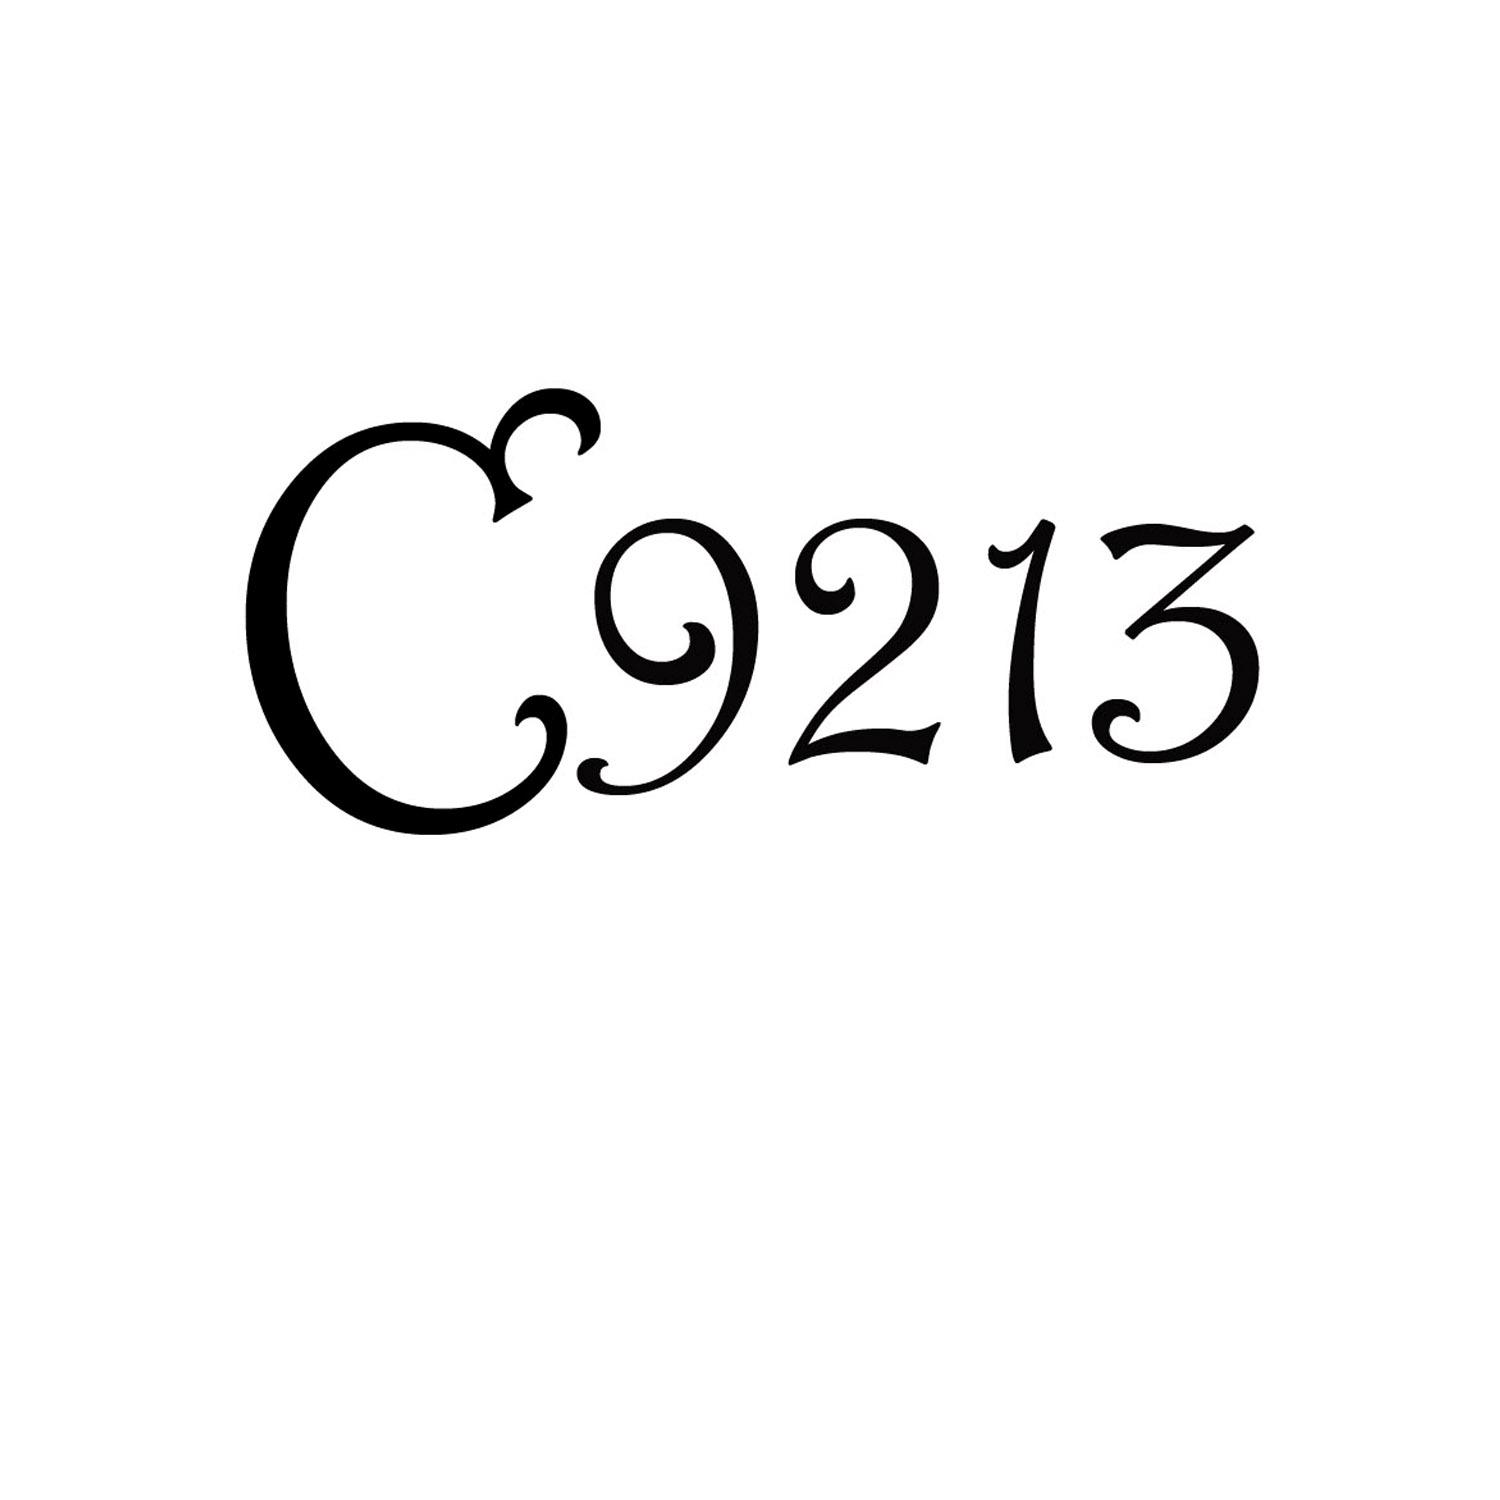 C 9213